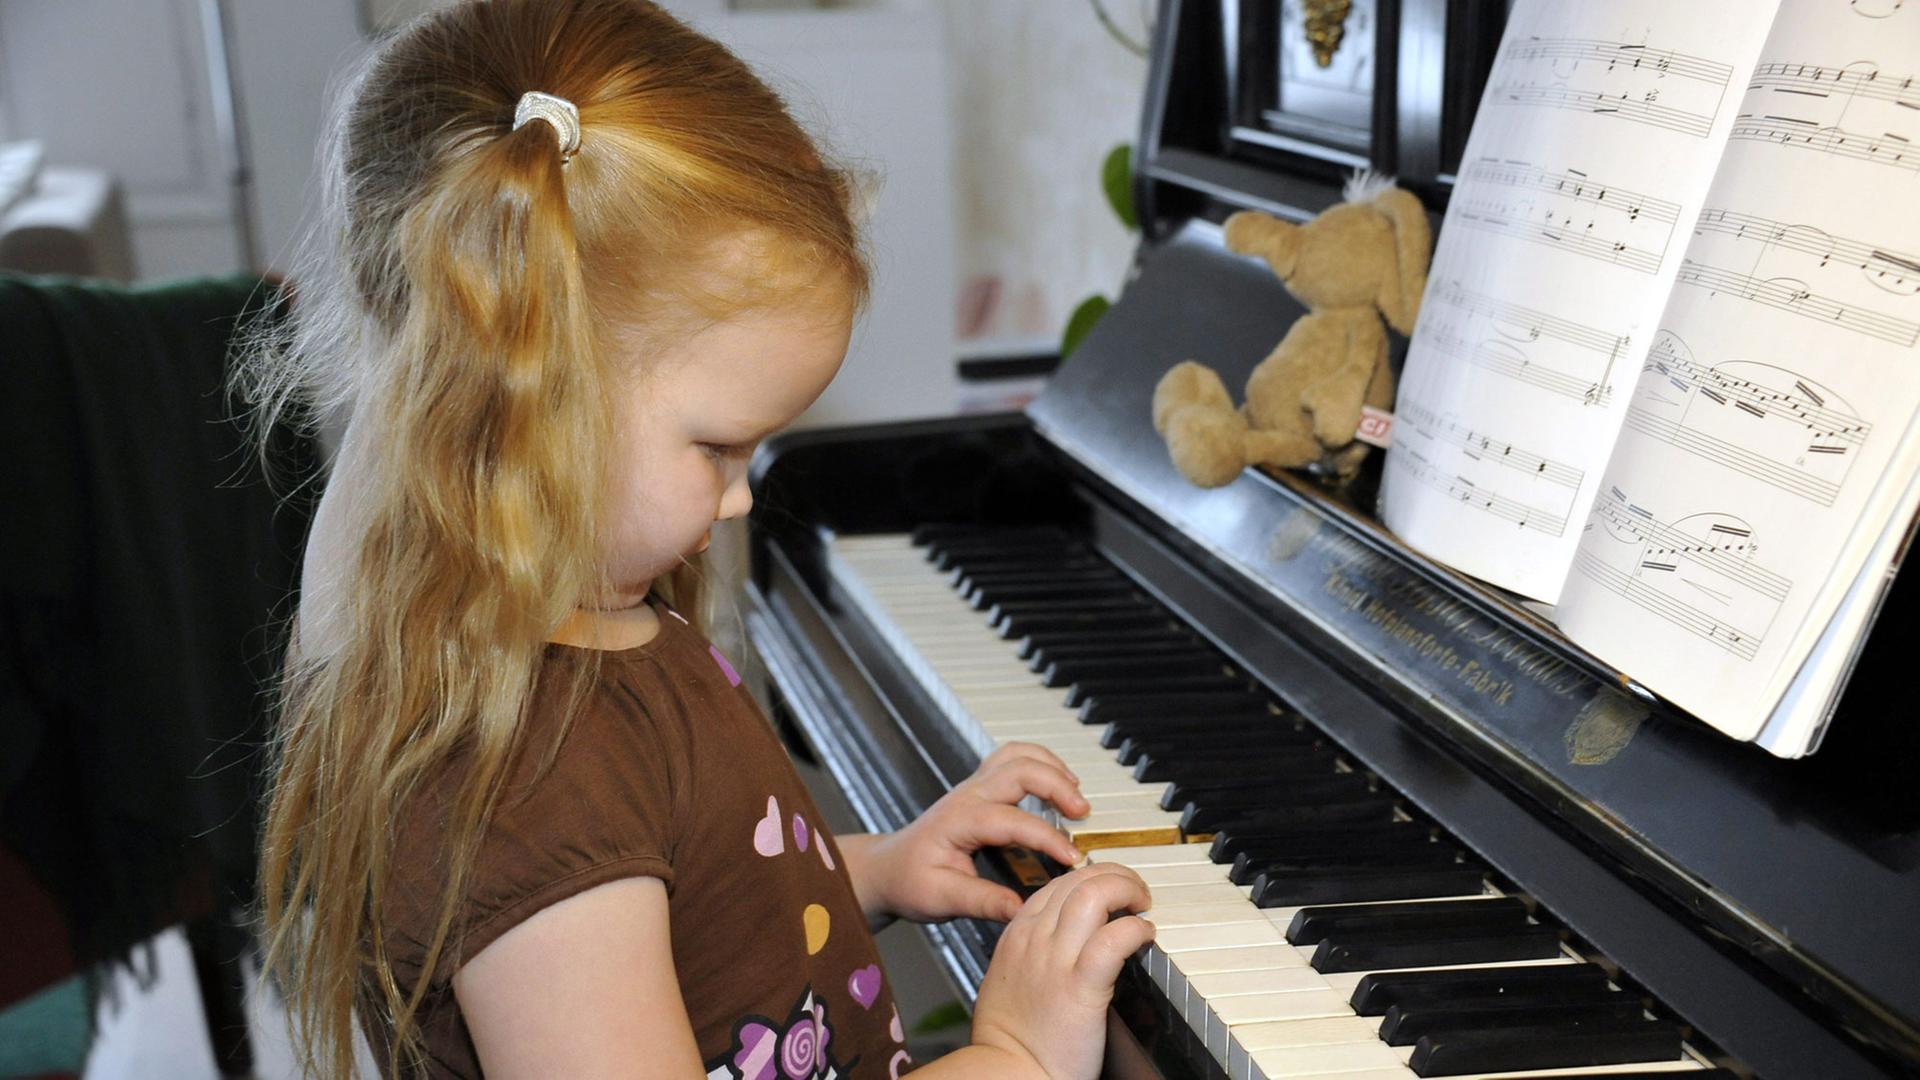 Klavier ist ein tolles Instrument, aber man muss viel üben, bis es auch toll klingt.